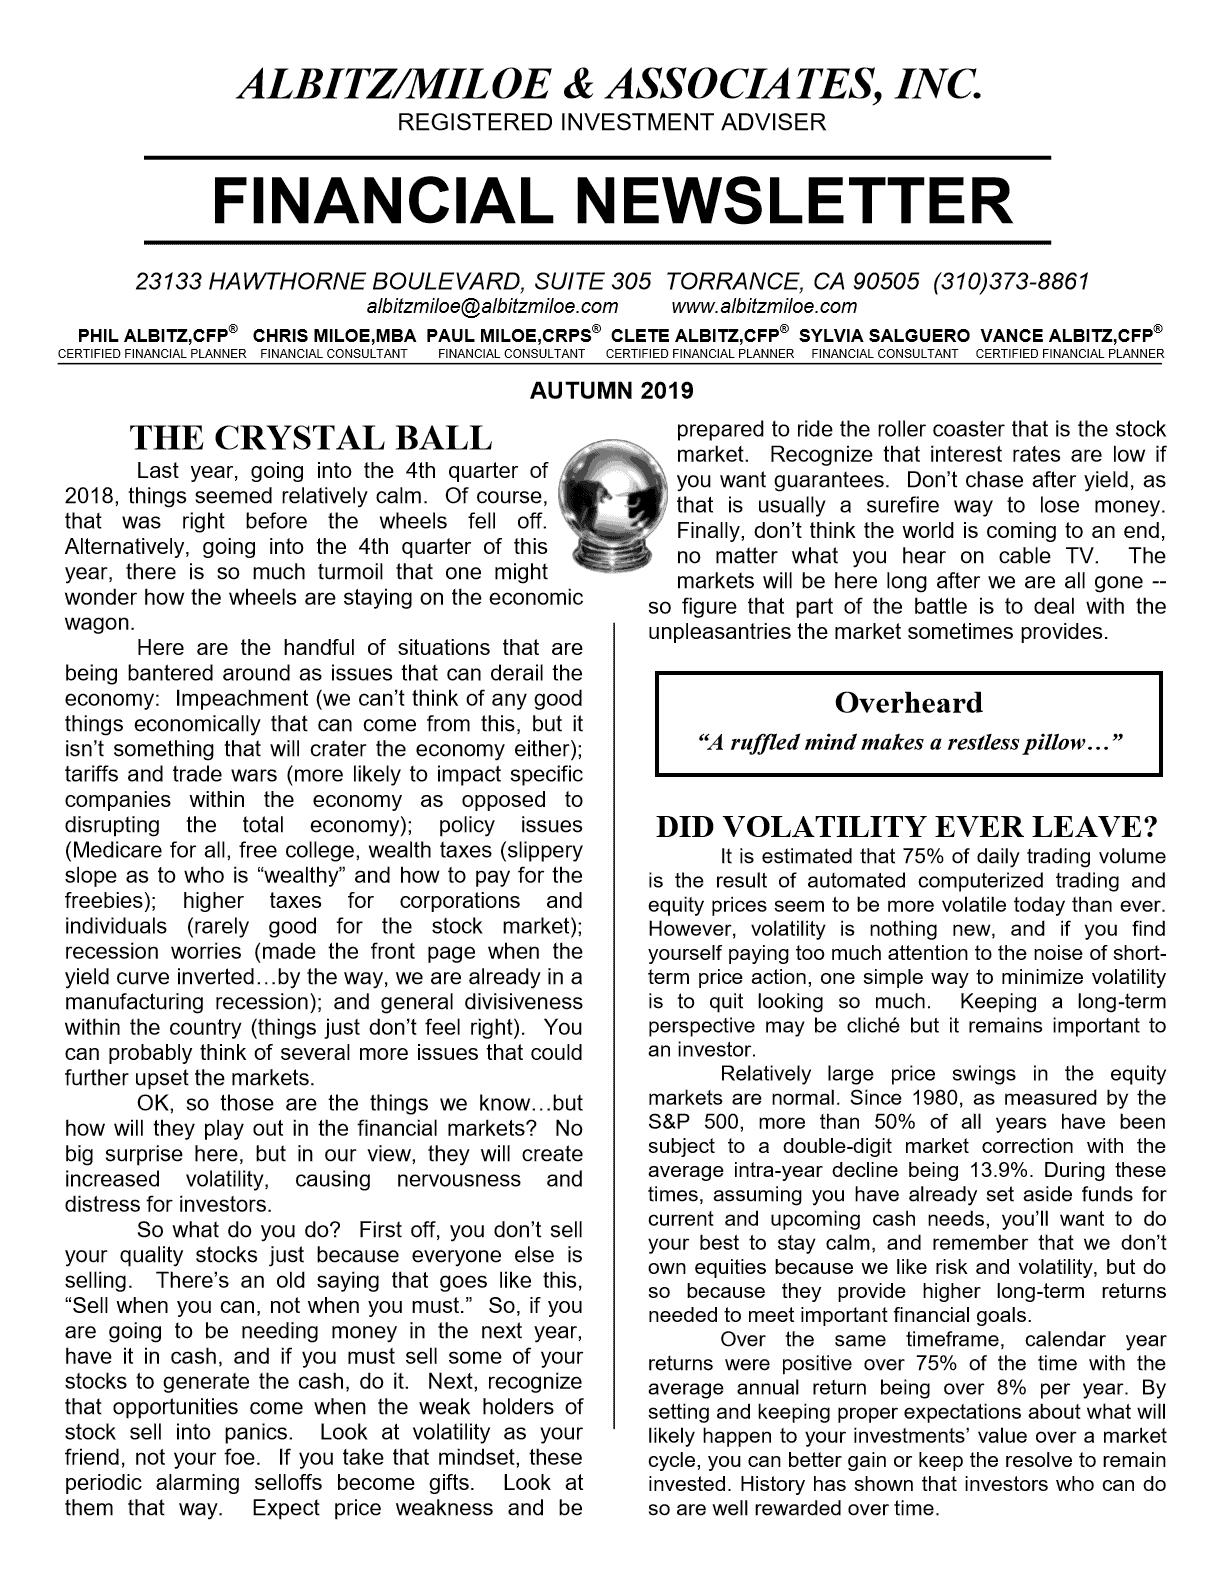 Am Autumn 2019 Financial Newsletter 1